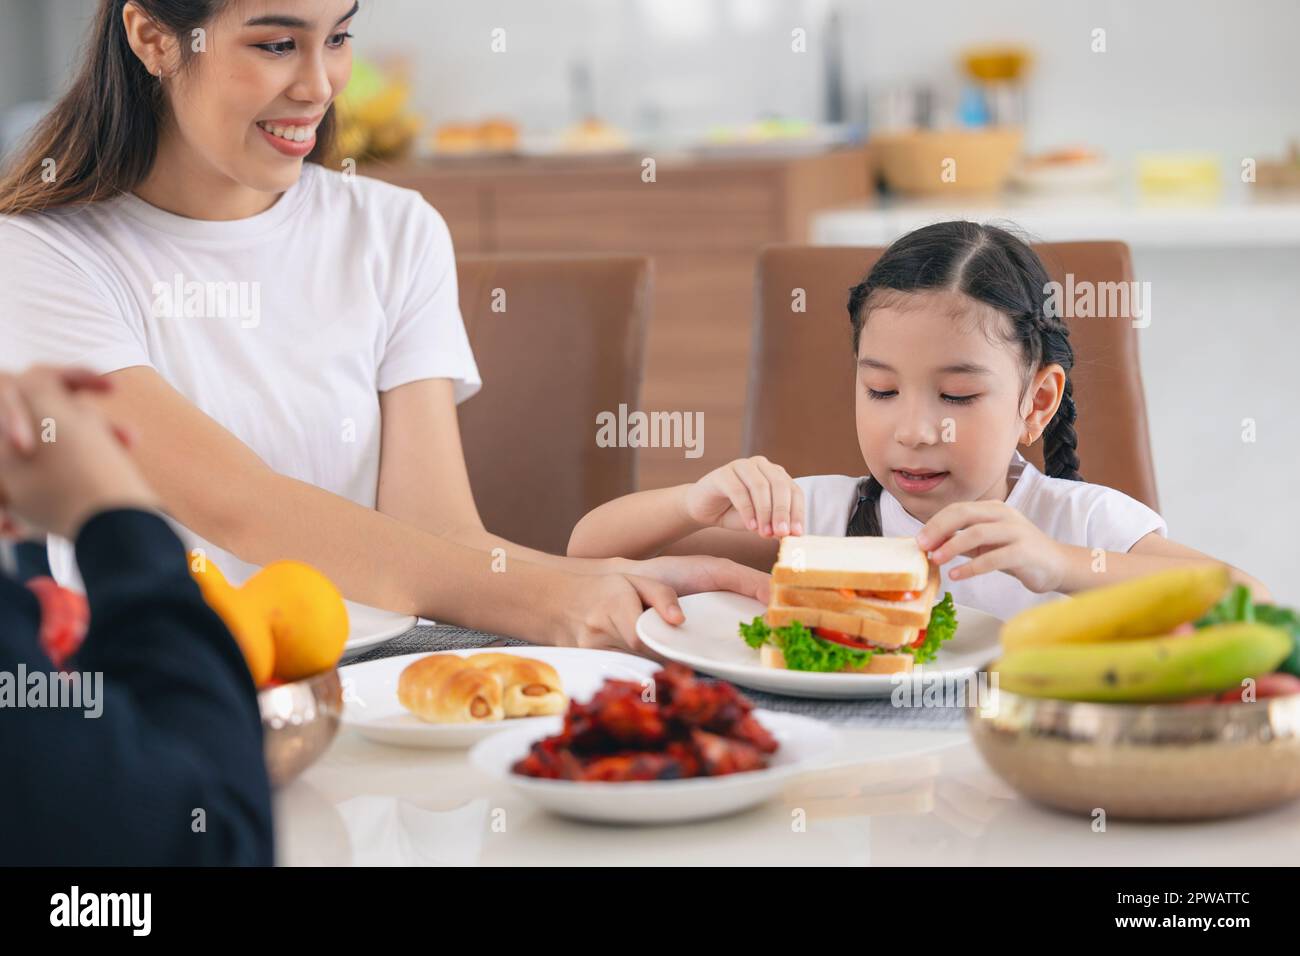 Asiatique mignon fille heureux profiter de manger des aliments sains matin repas salade de légumes sandwich Banque D'Images